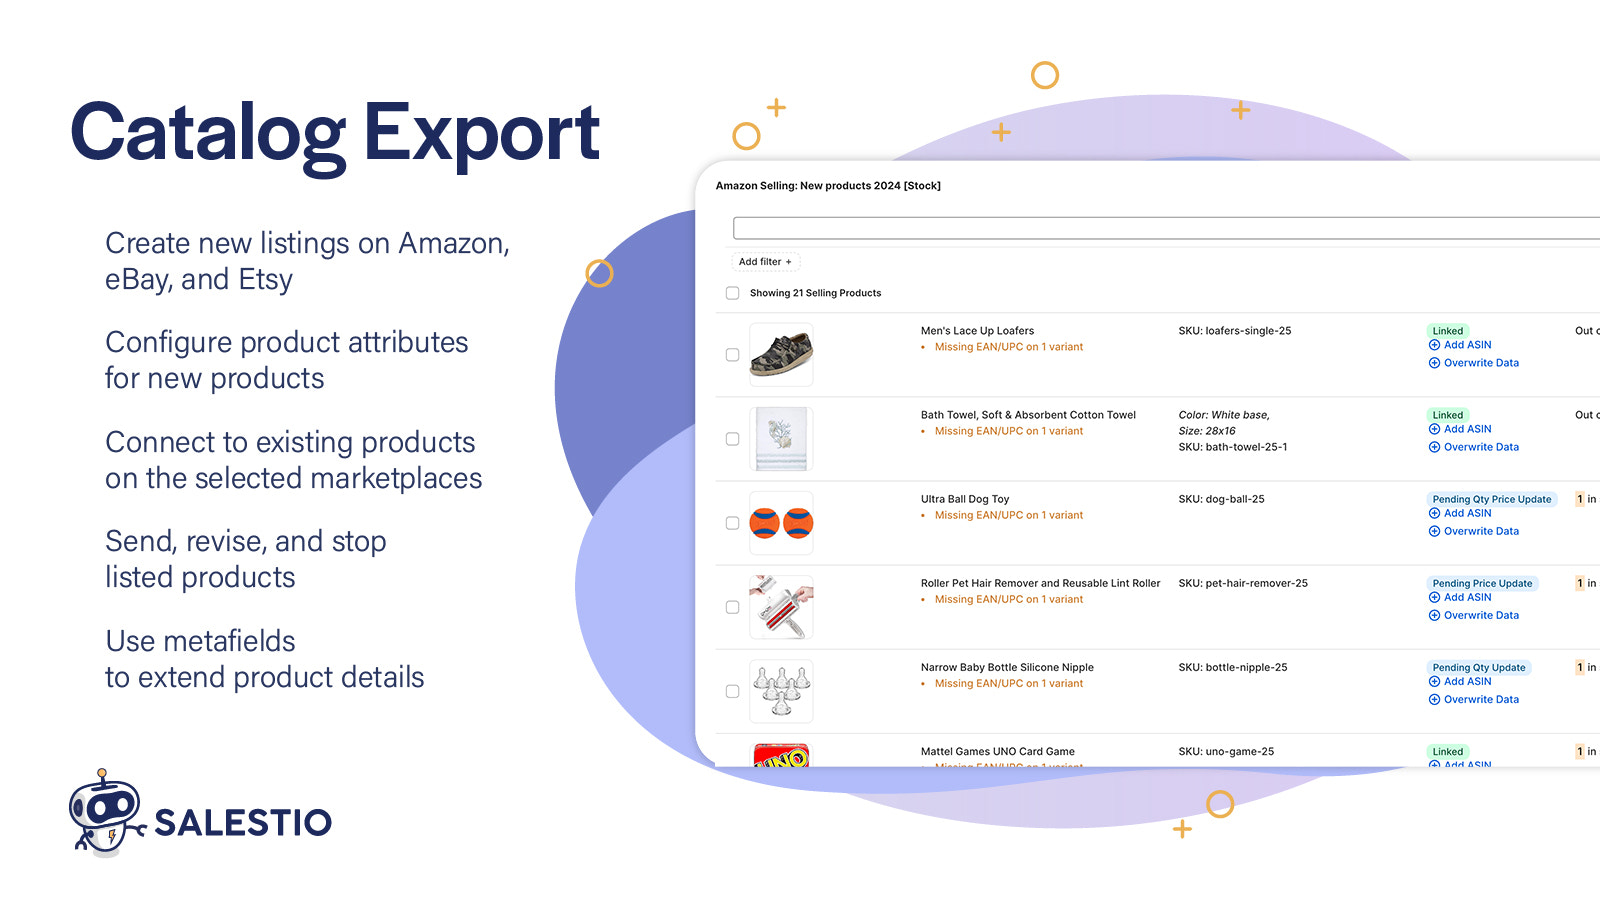 Katalog Export